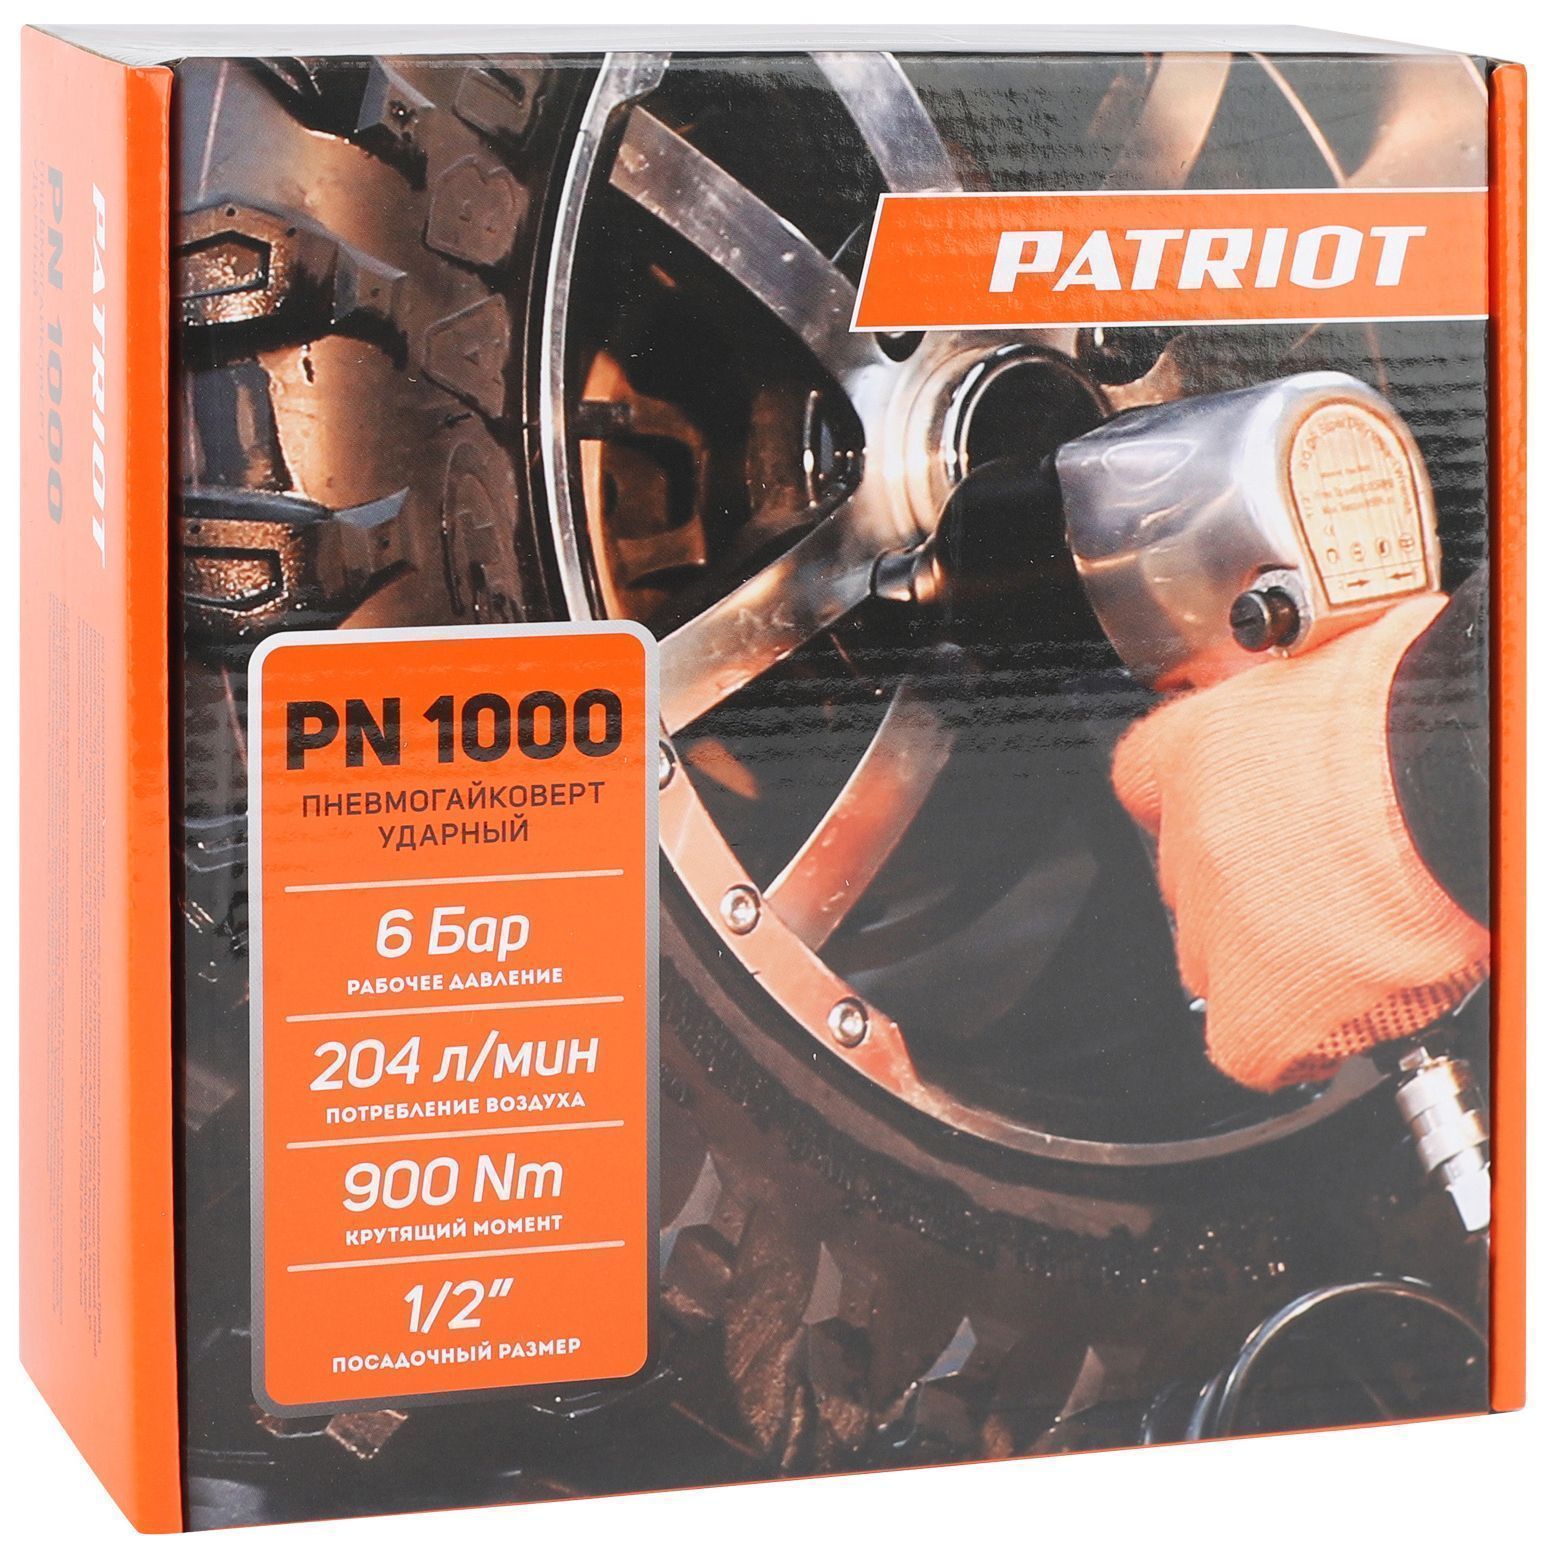 Пневмогайковерт Patriot PN 1000 830902044 Patriot от магазина Tehnorama